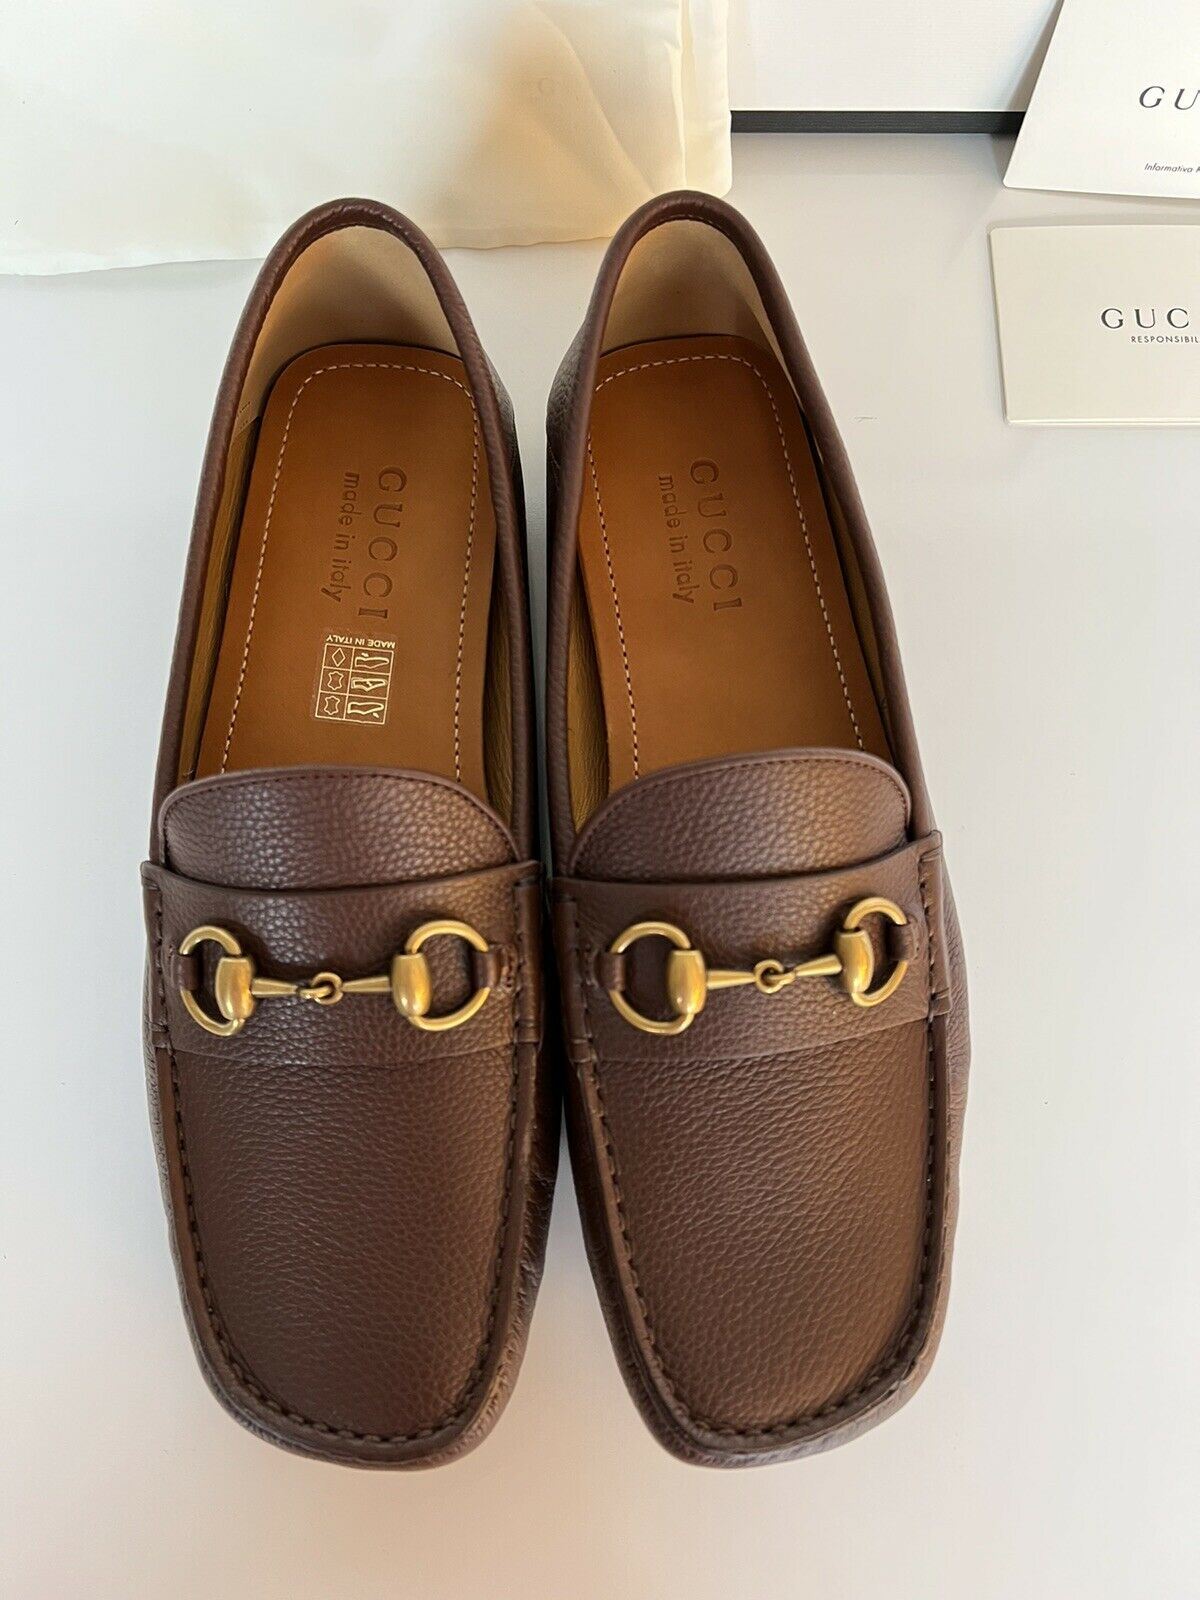 Мужские кожаные туфли для водителя NIB Gucci Hebron Horsebit коричневые 8,5 США/7,5 Великобритания 548604 